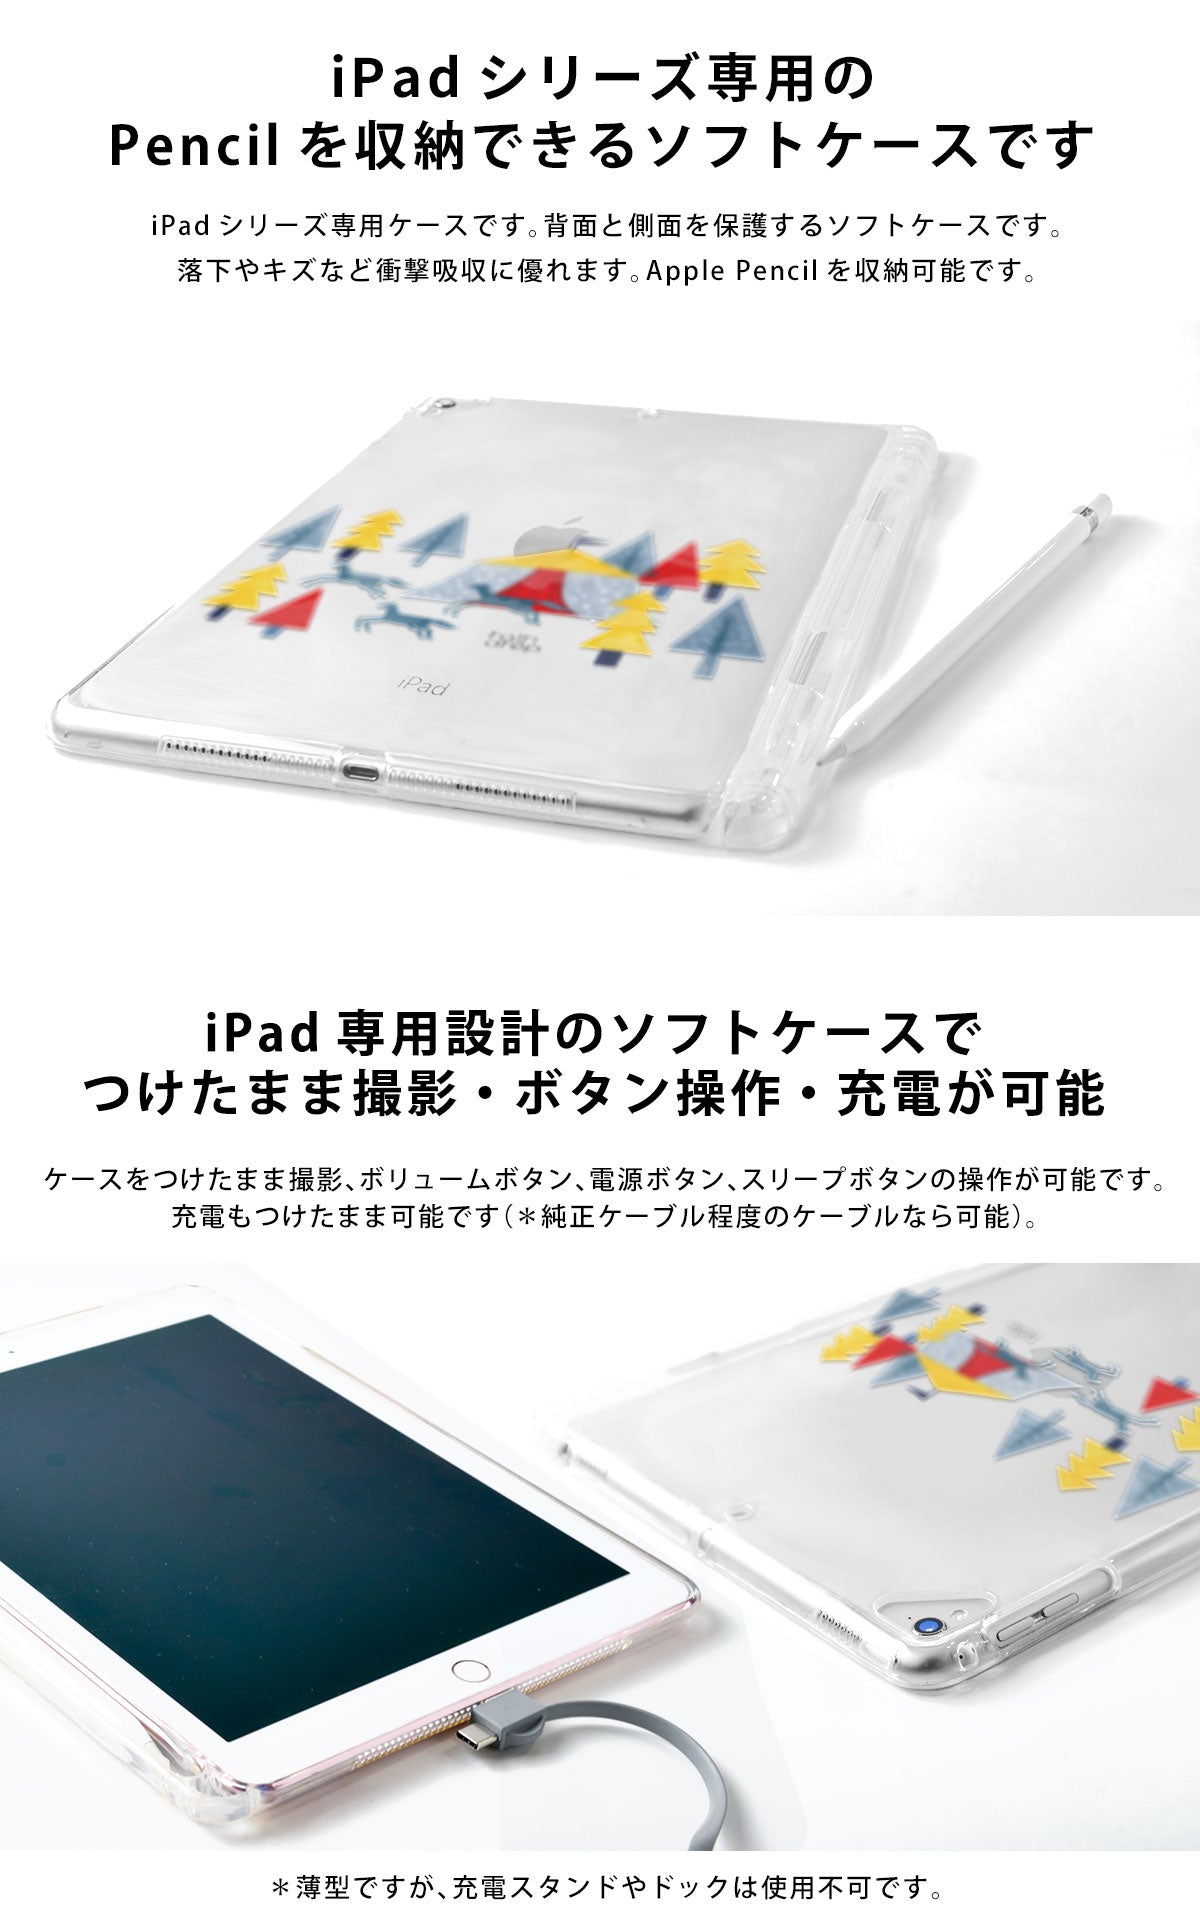 iPad専用クリアケースはiPadの背面と側面を保護するソフトケース。